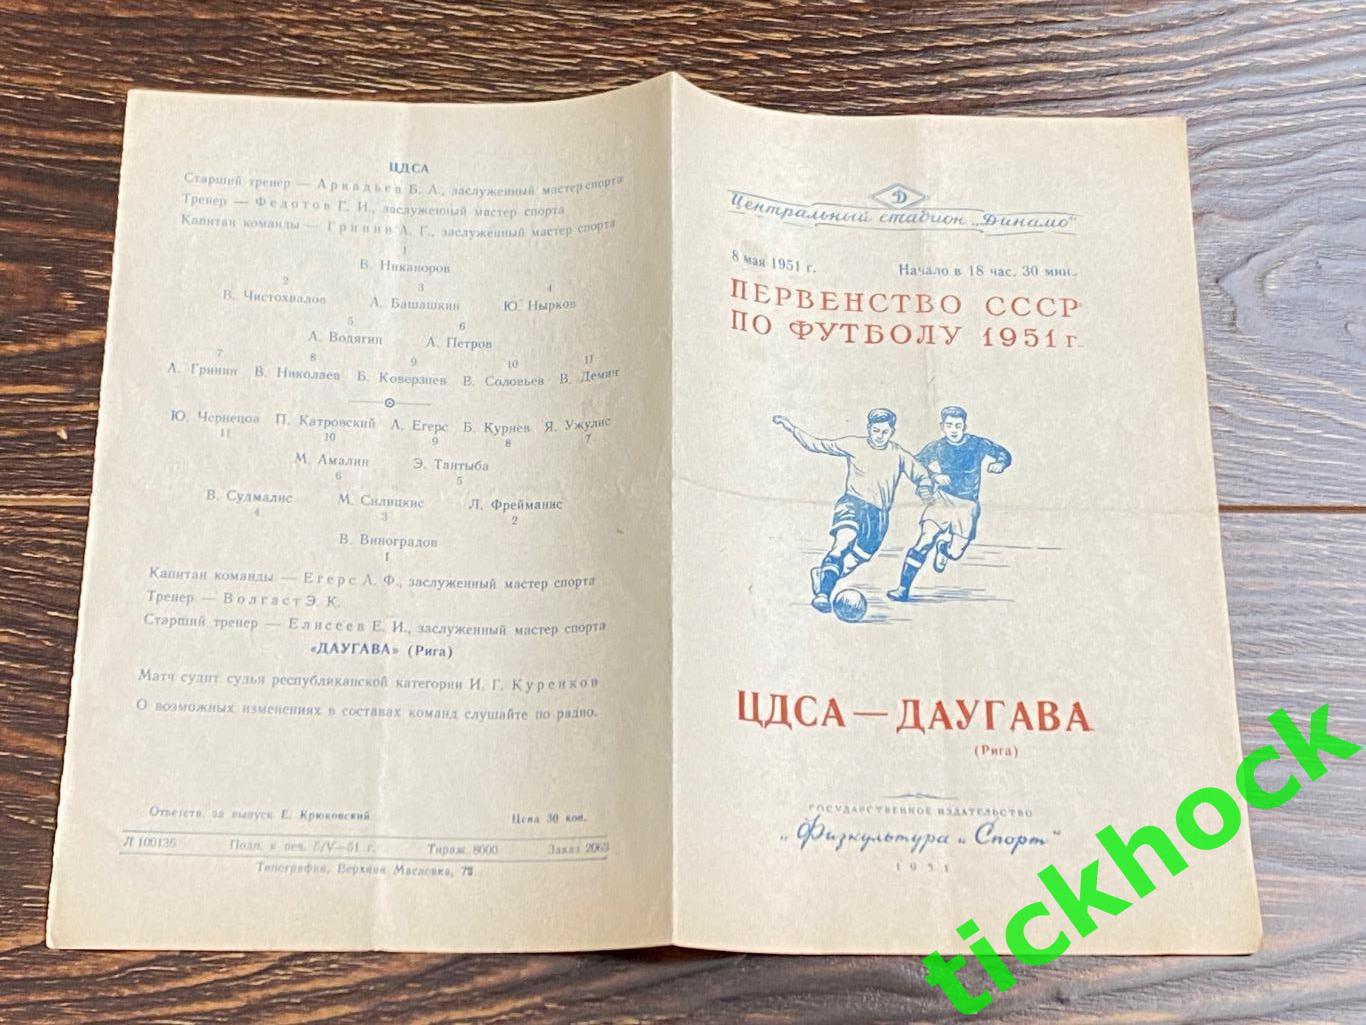 ЦДСА / ЦСКА Москва - Даугава Рига 08.05. 1951-- SY 1